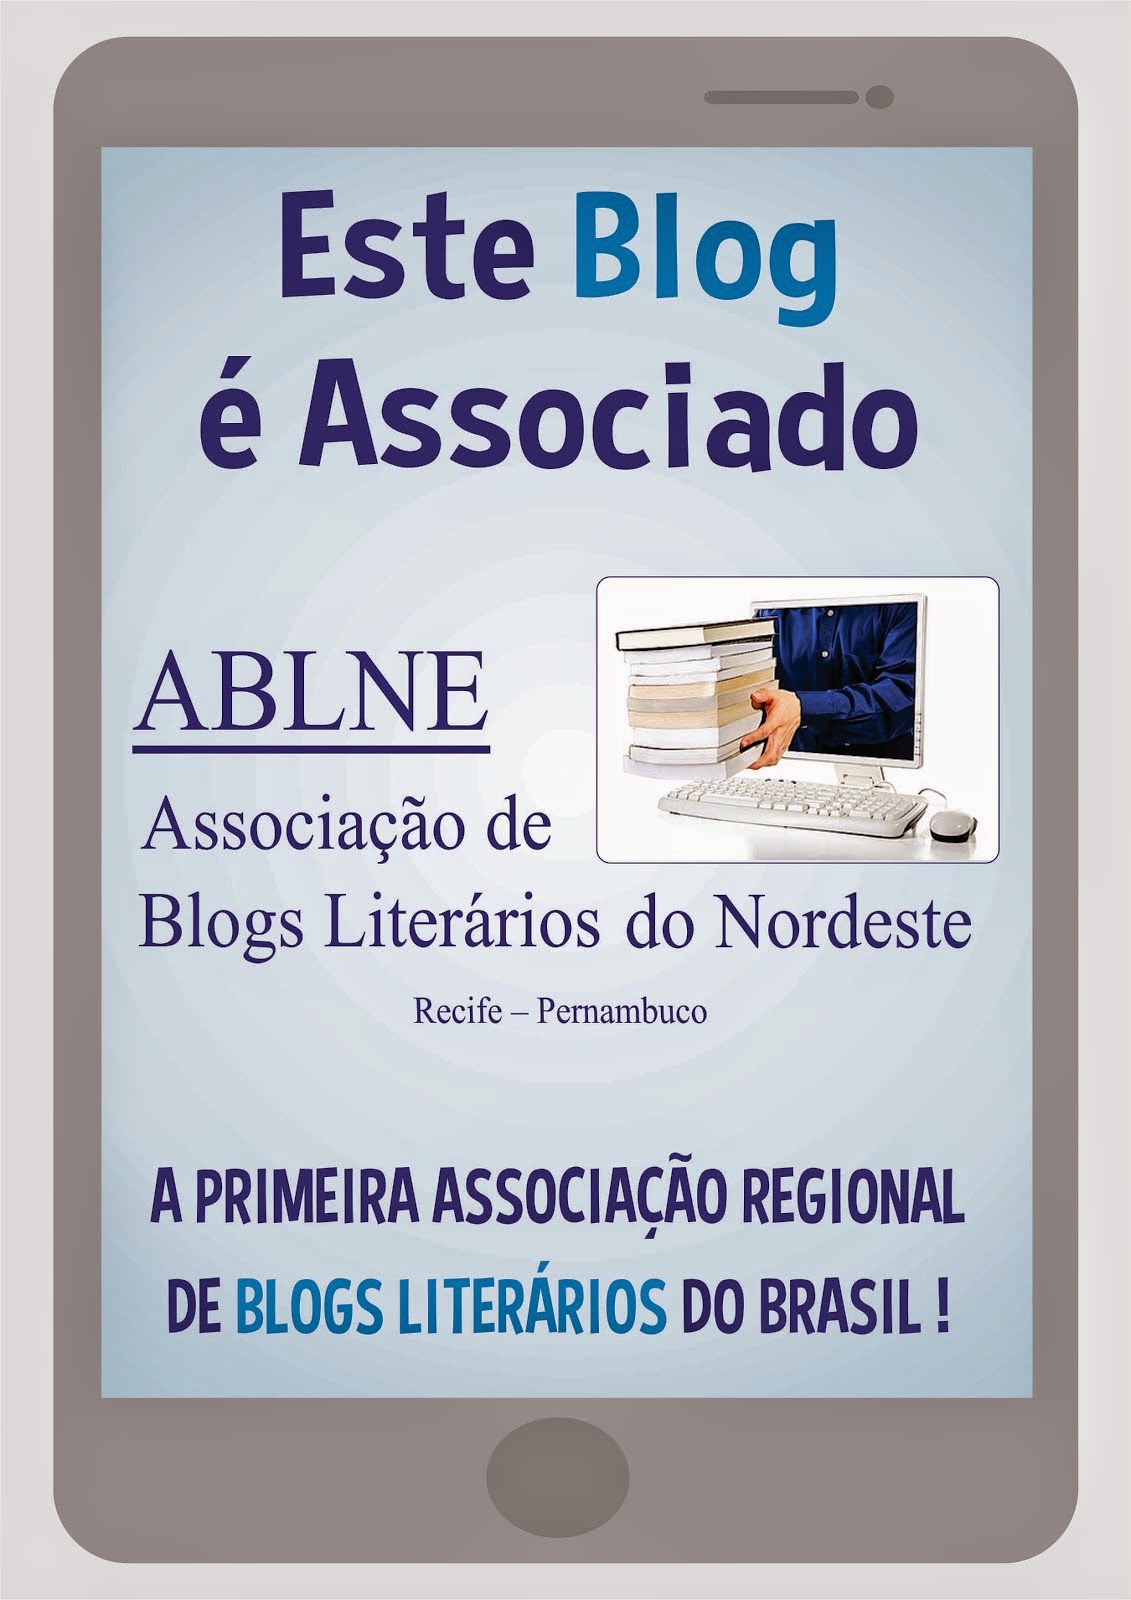 ABLNE - ASSOCIAÇÃO DE BLOGS LITERÁRIOS DO NORDESTE